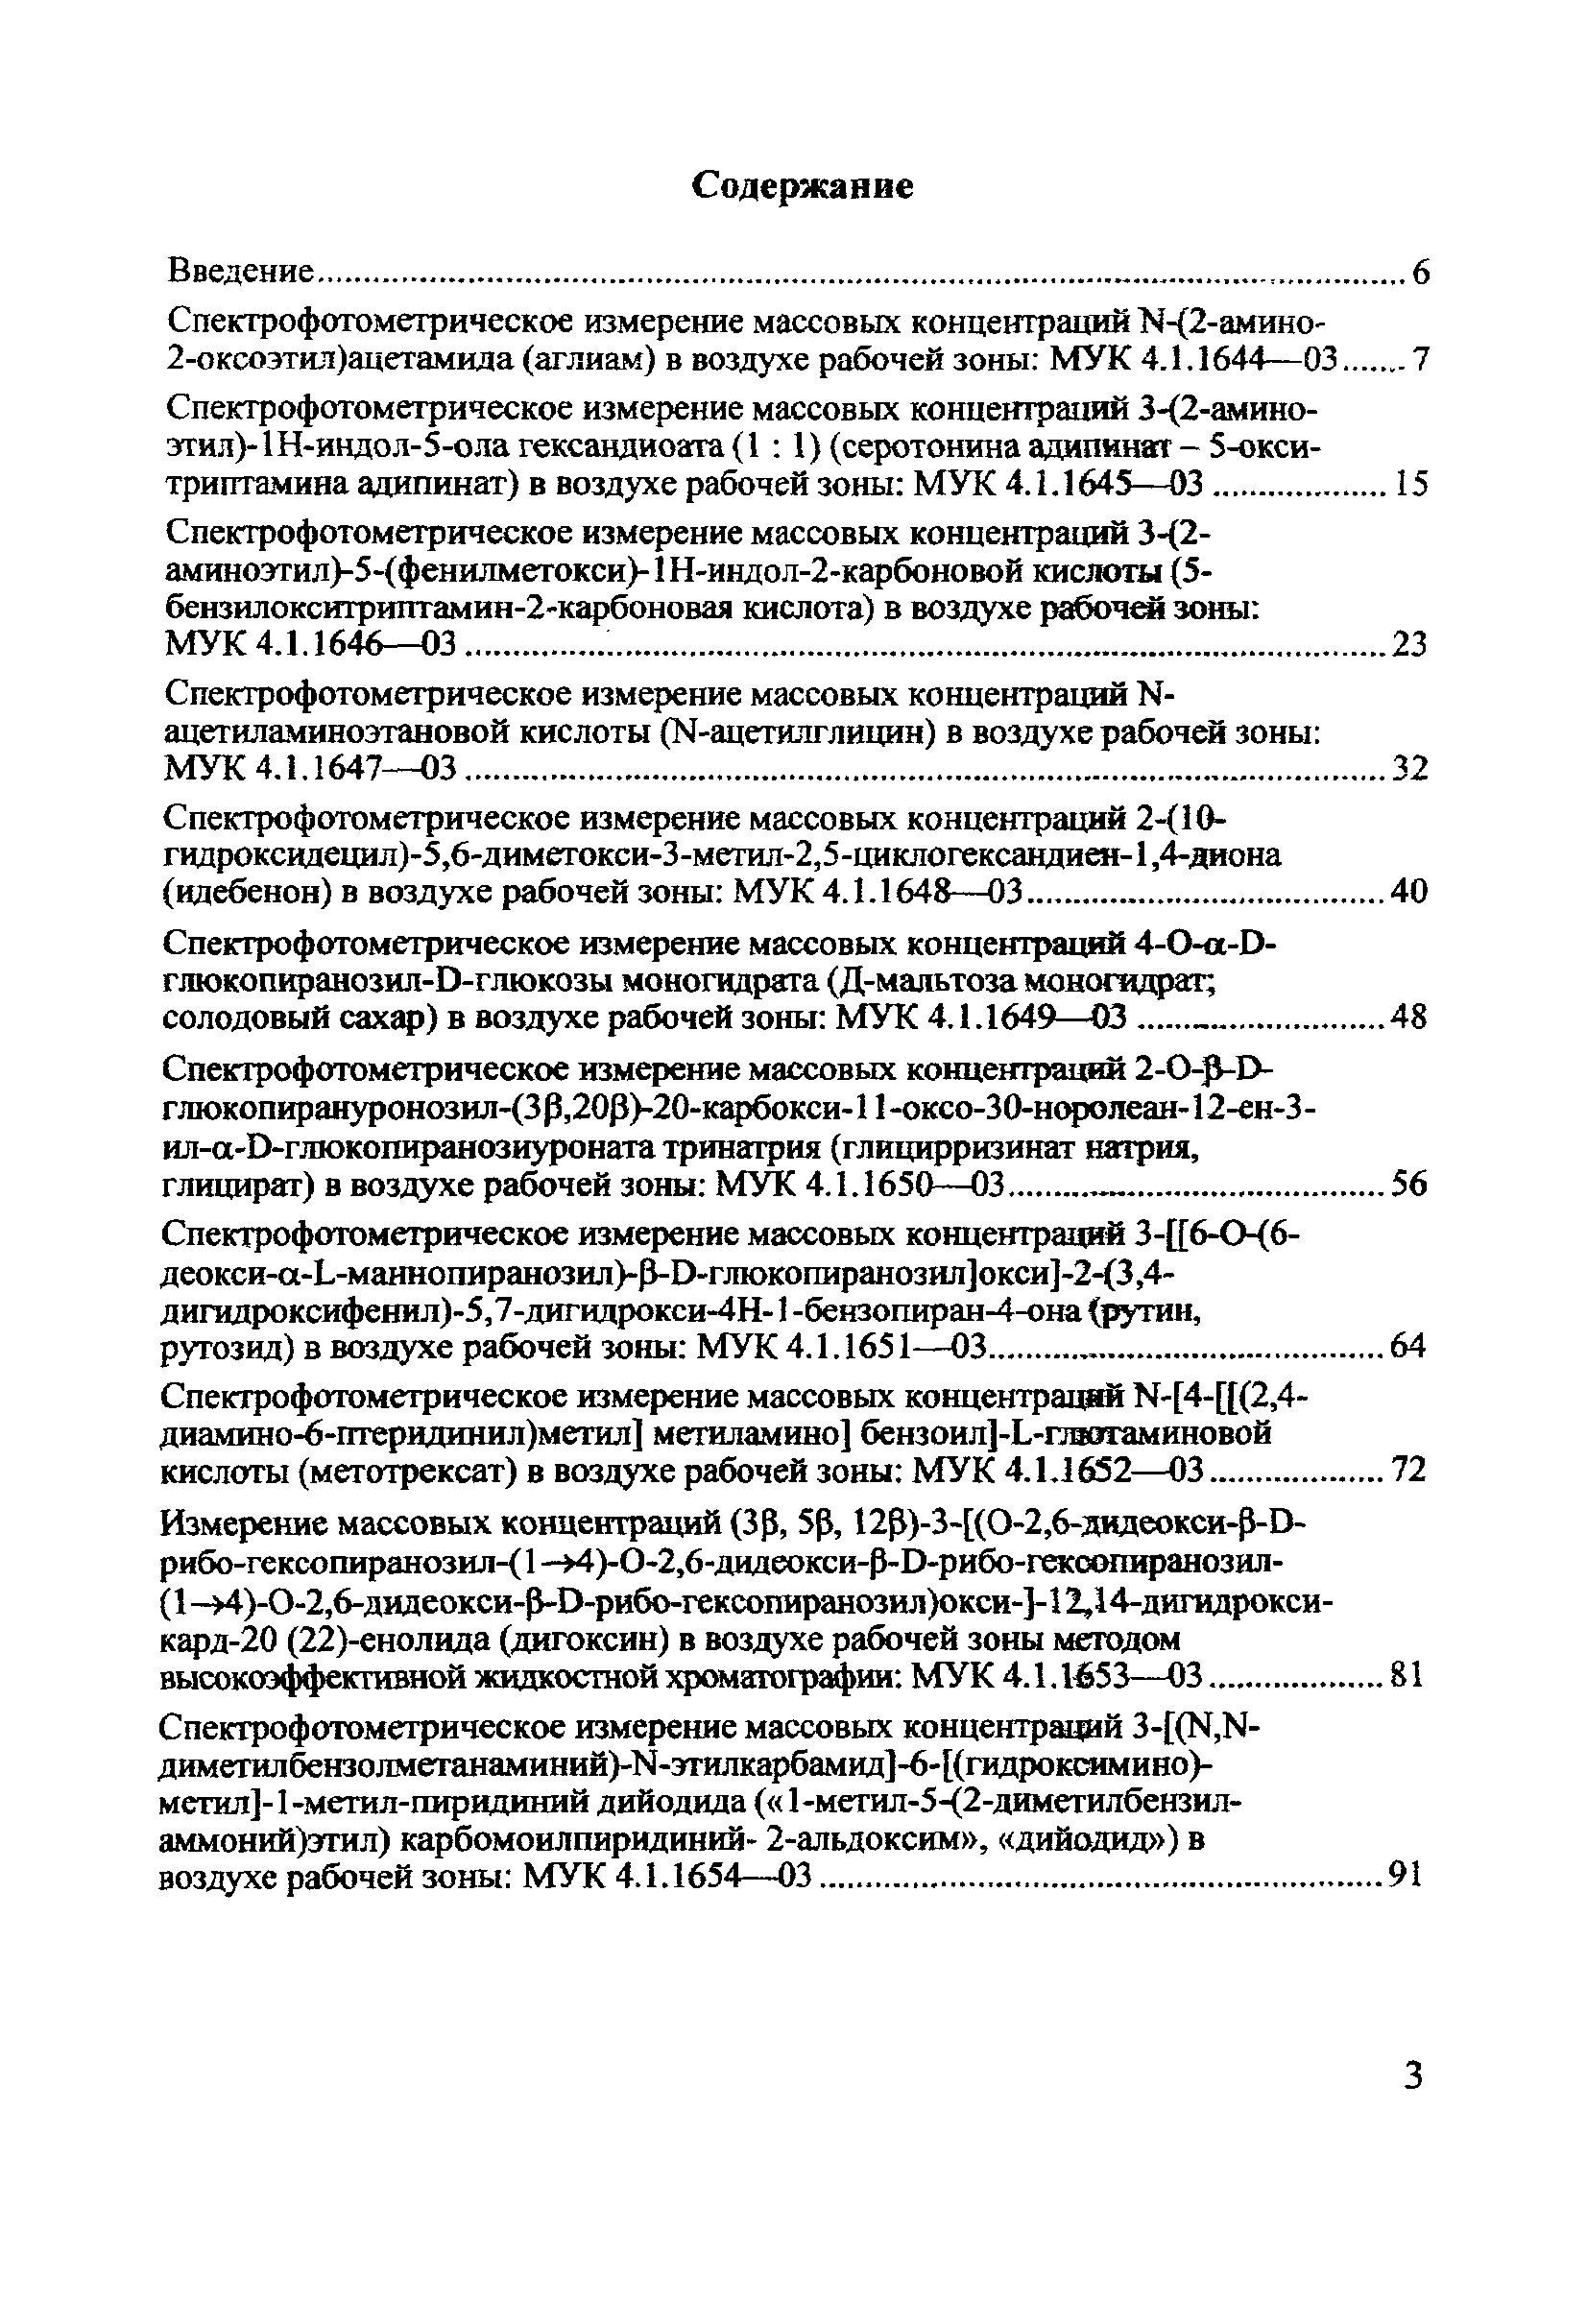 МУК 4.1.1644-03